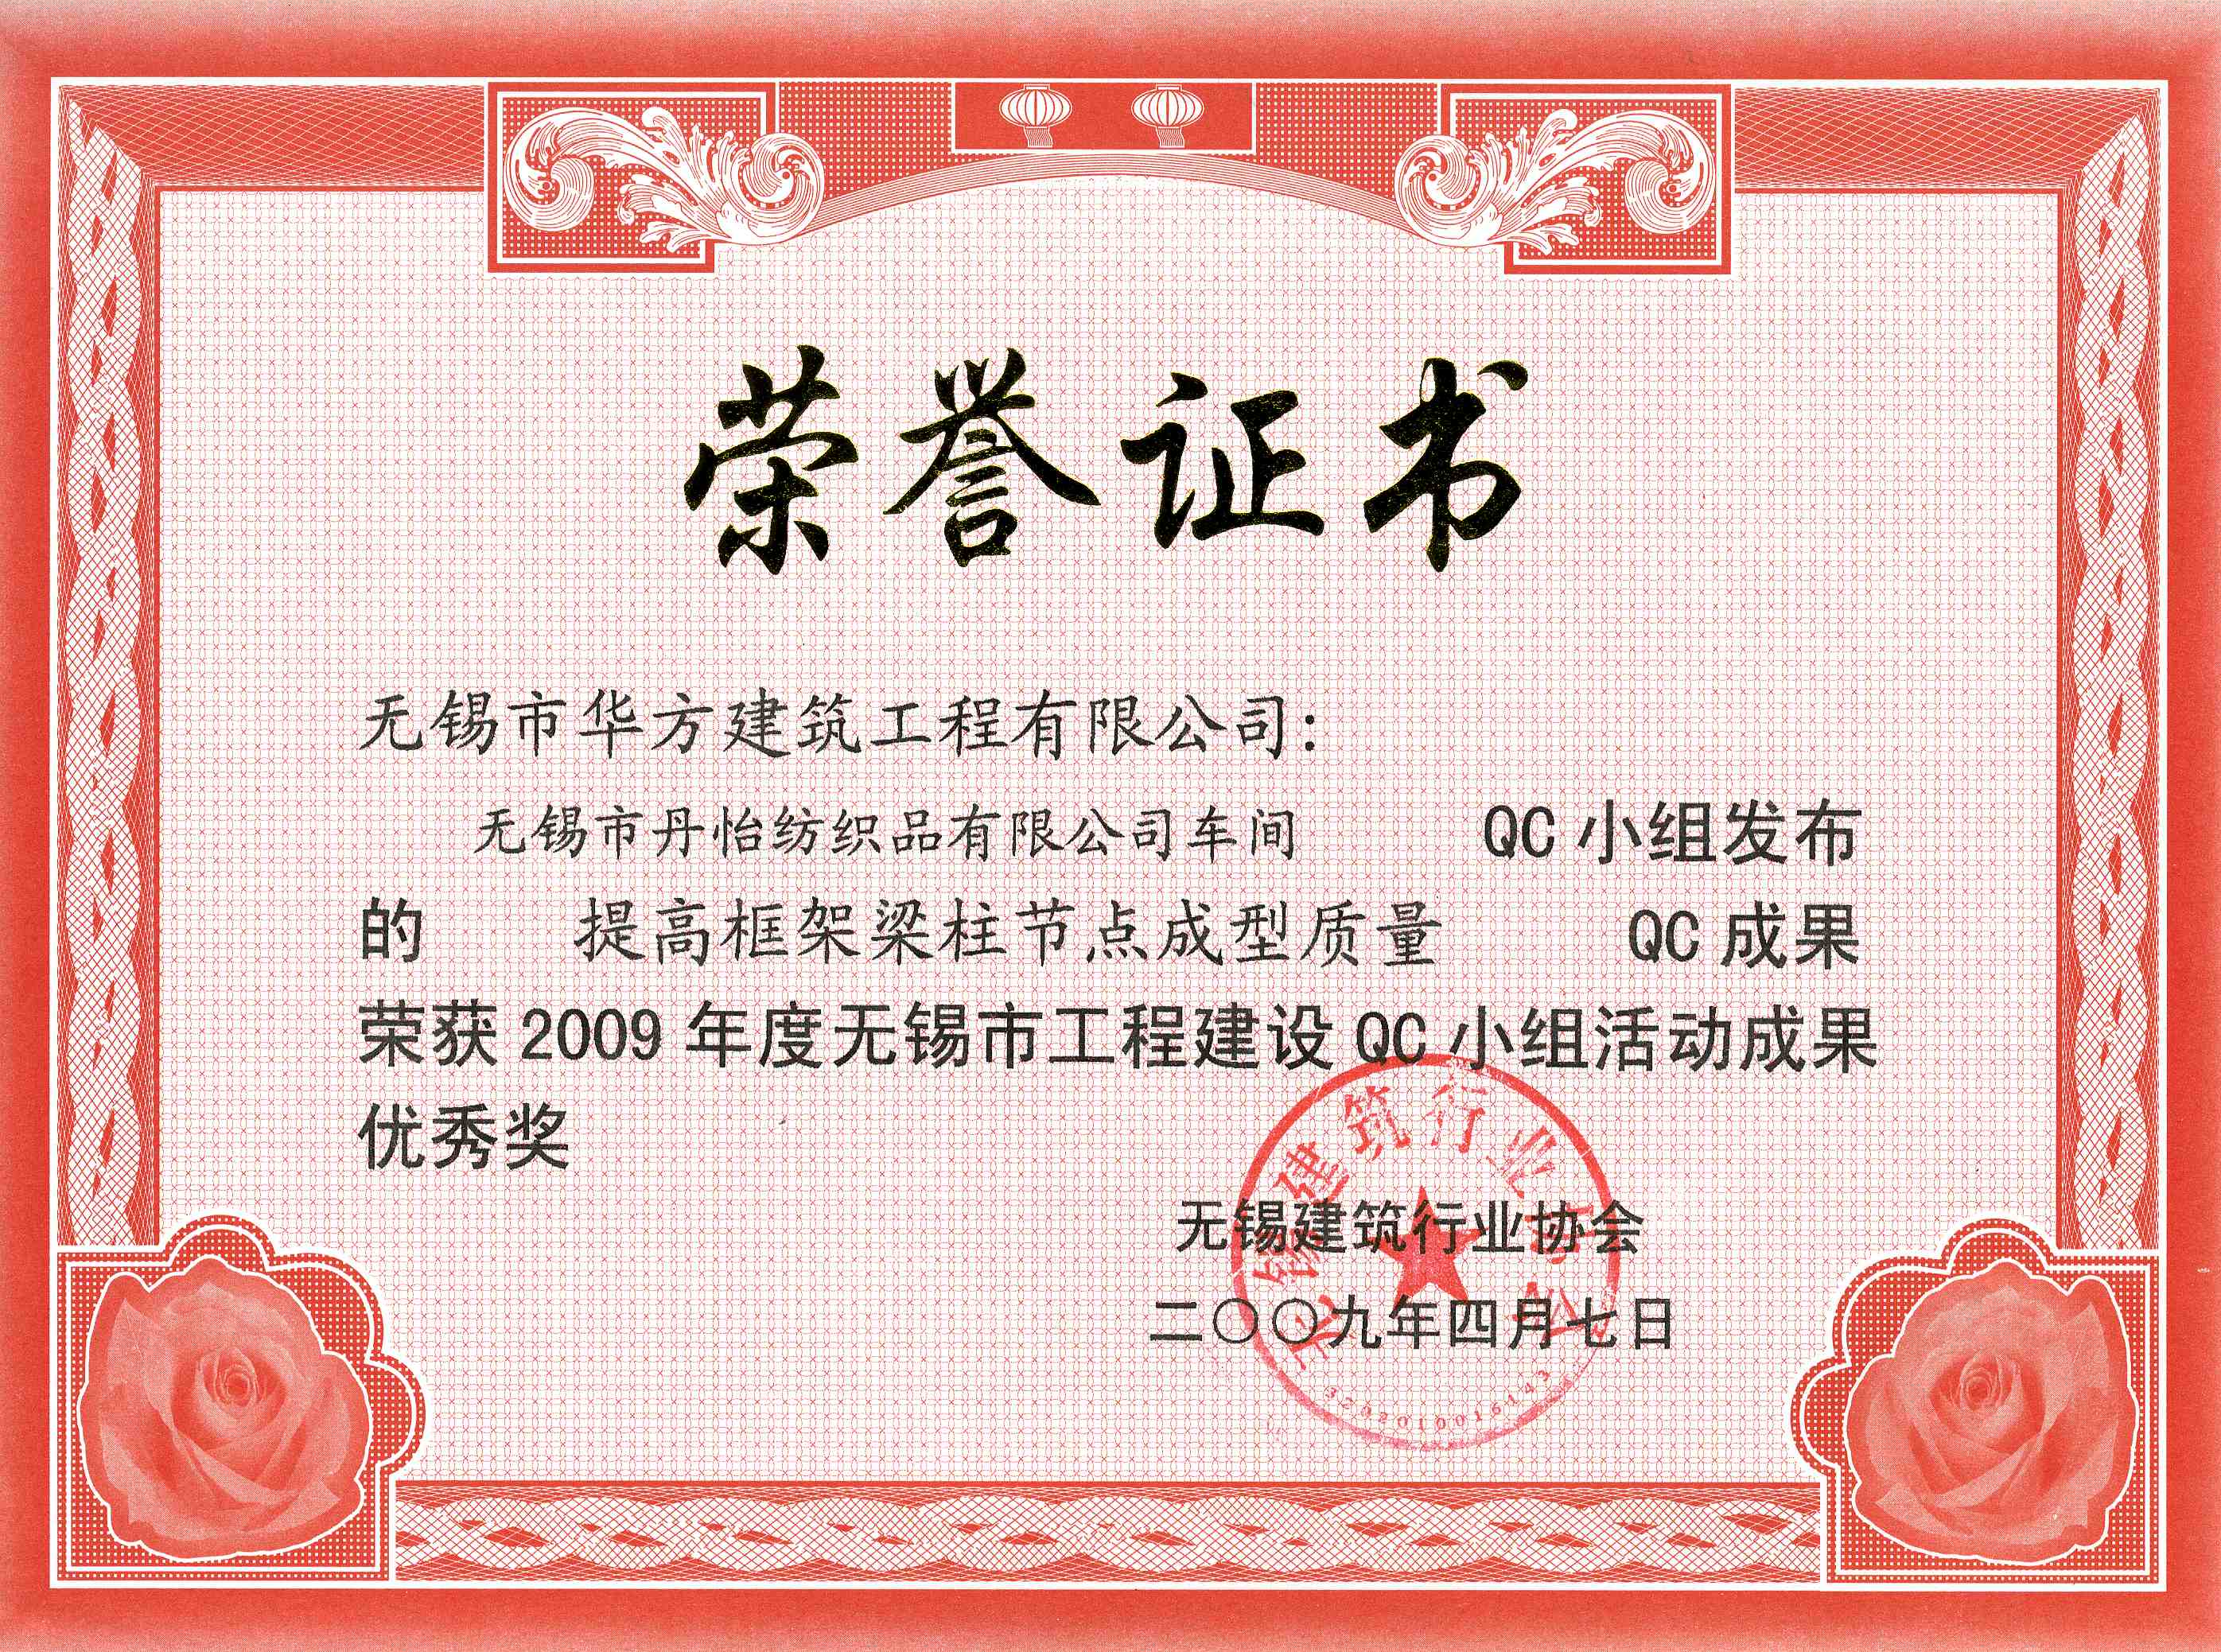 2009年度丹怡纺织品车间-无锡市QC小组活动成果优秀奖